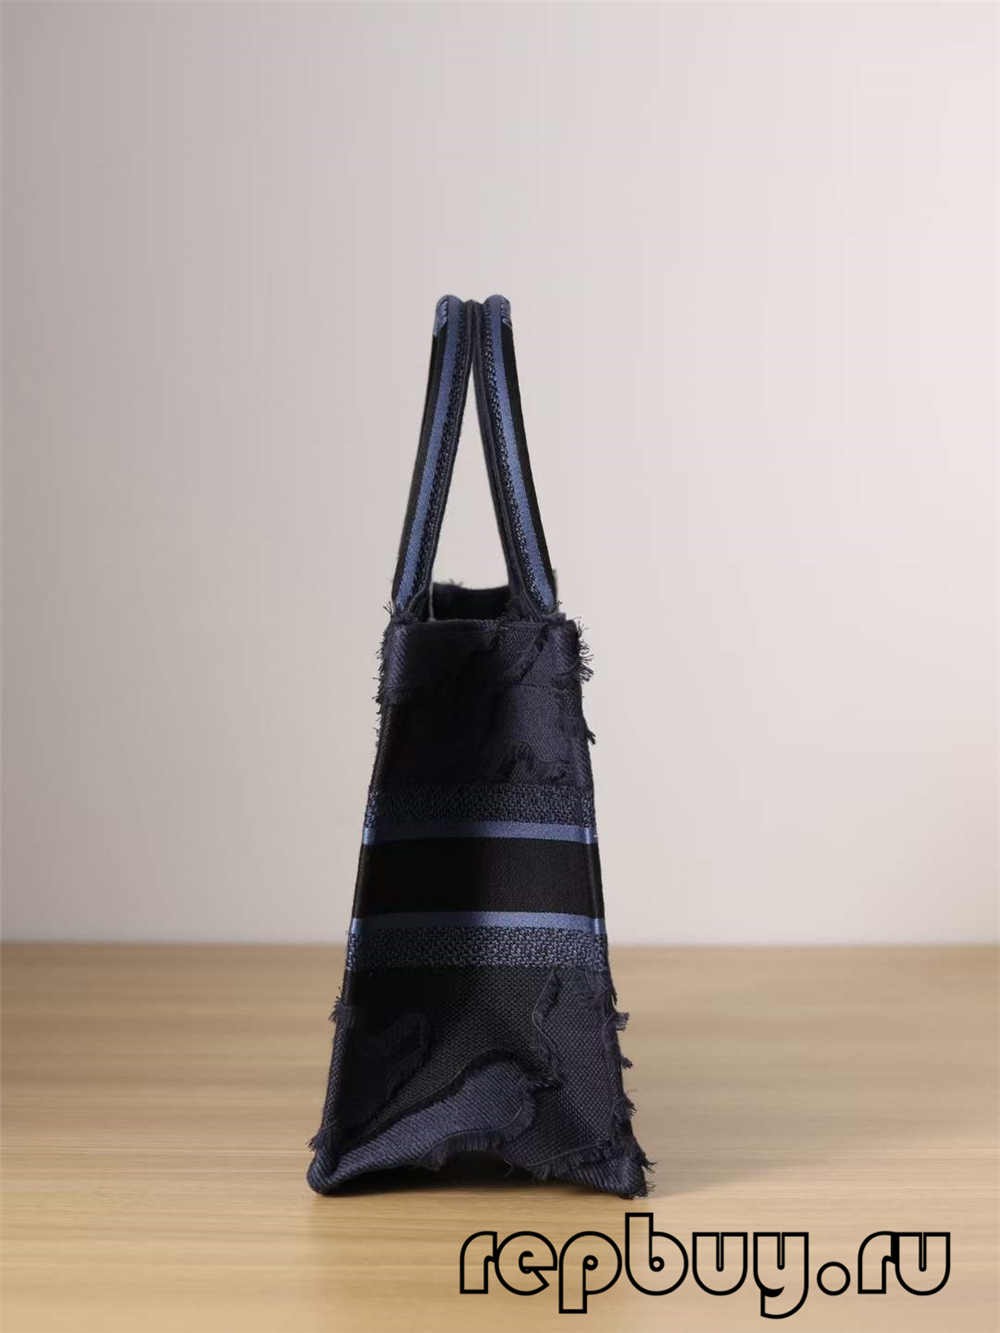 Dior Book Tote best replica bags: Blue tassel print embroidery（2022 Latest）-ఉత్తమ నాణ్యత నకిలీ లూయిస్ విట్టన్ బ్యాగ్ ఆన్‌లైన్ స్టోర్, రెప్లికా డిజైనర్ బ్యాగ్ రు